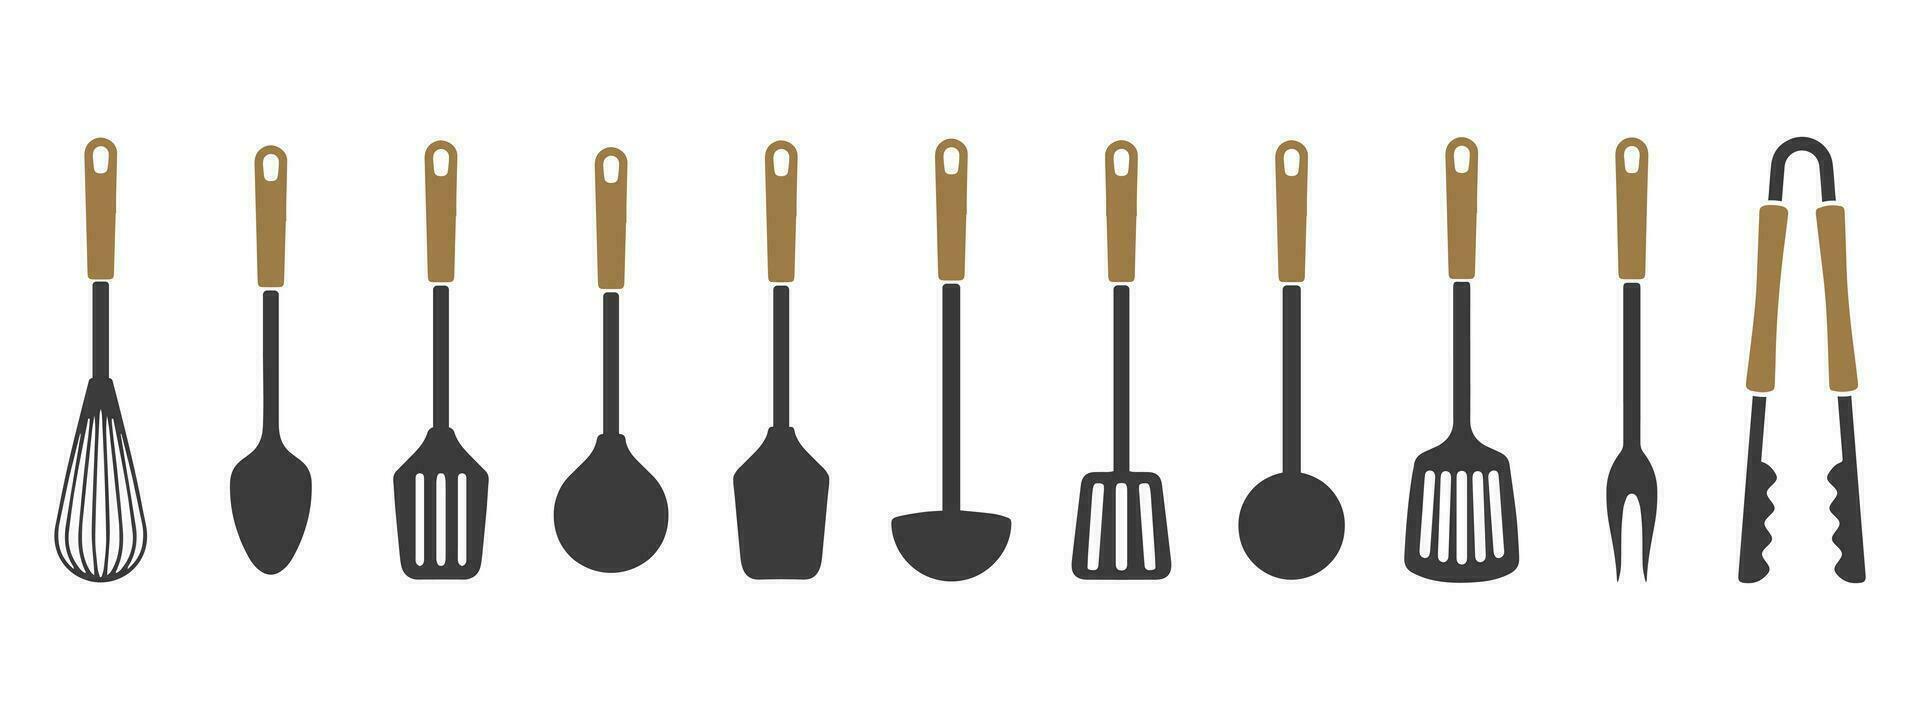 grande conjunto de cocina utensilios, silueta. espátulas, mano mezclador, cucharas, cucharones, tenazas. iconos, vector